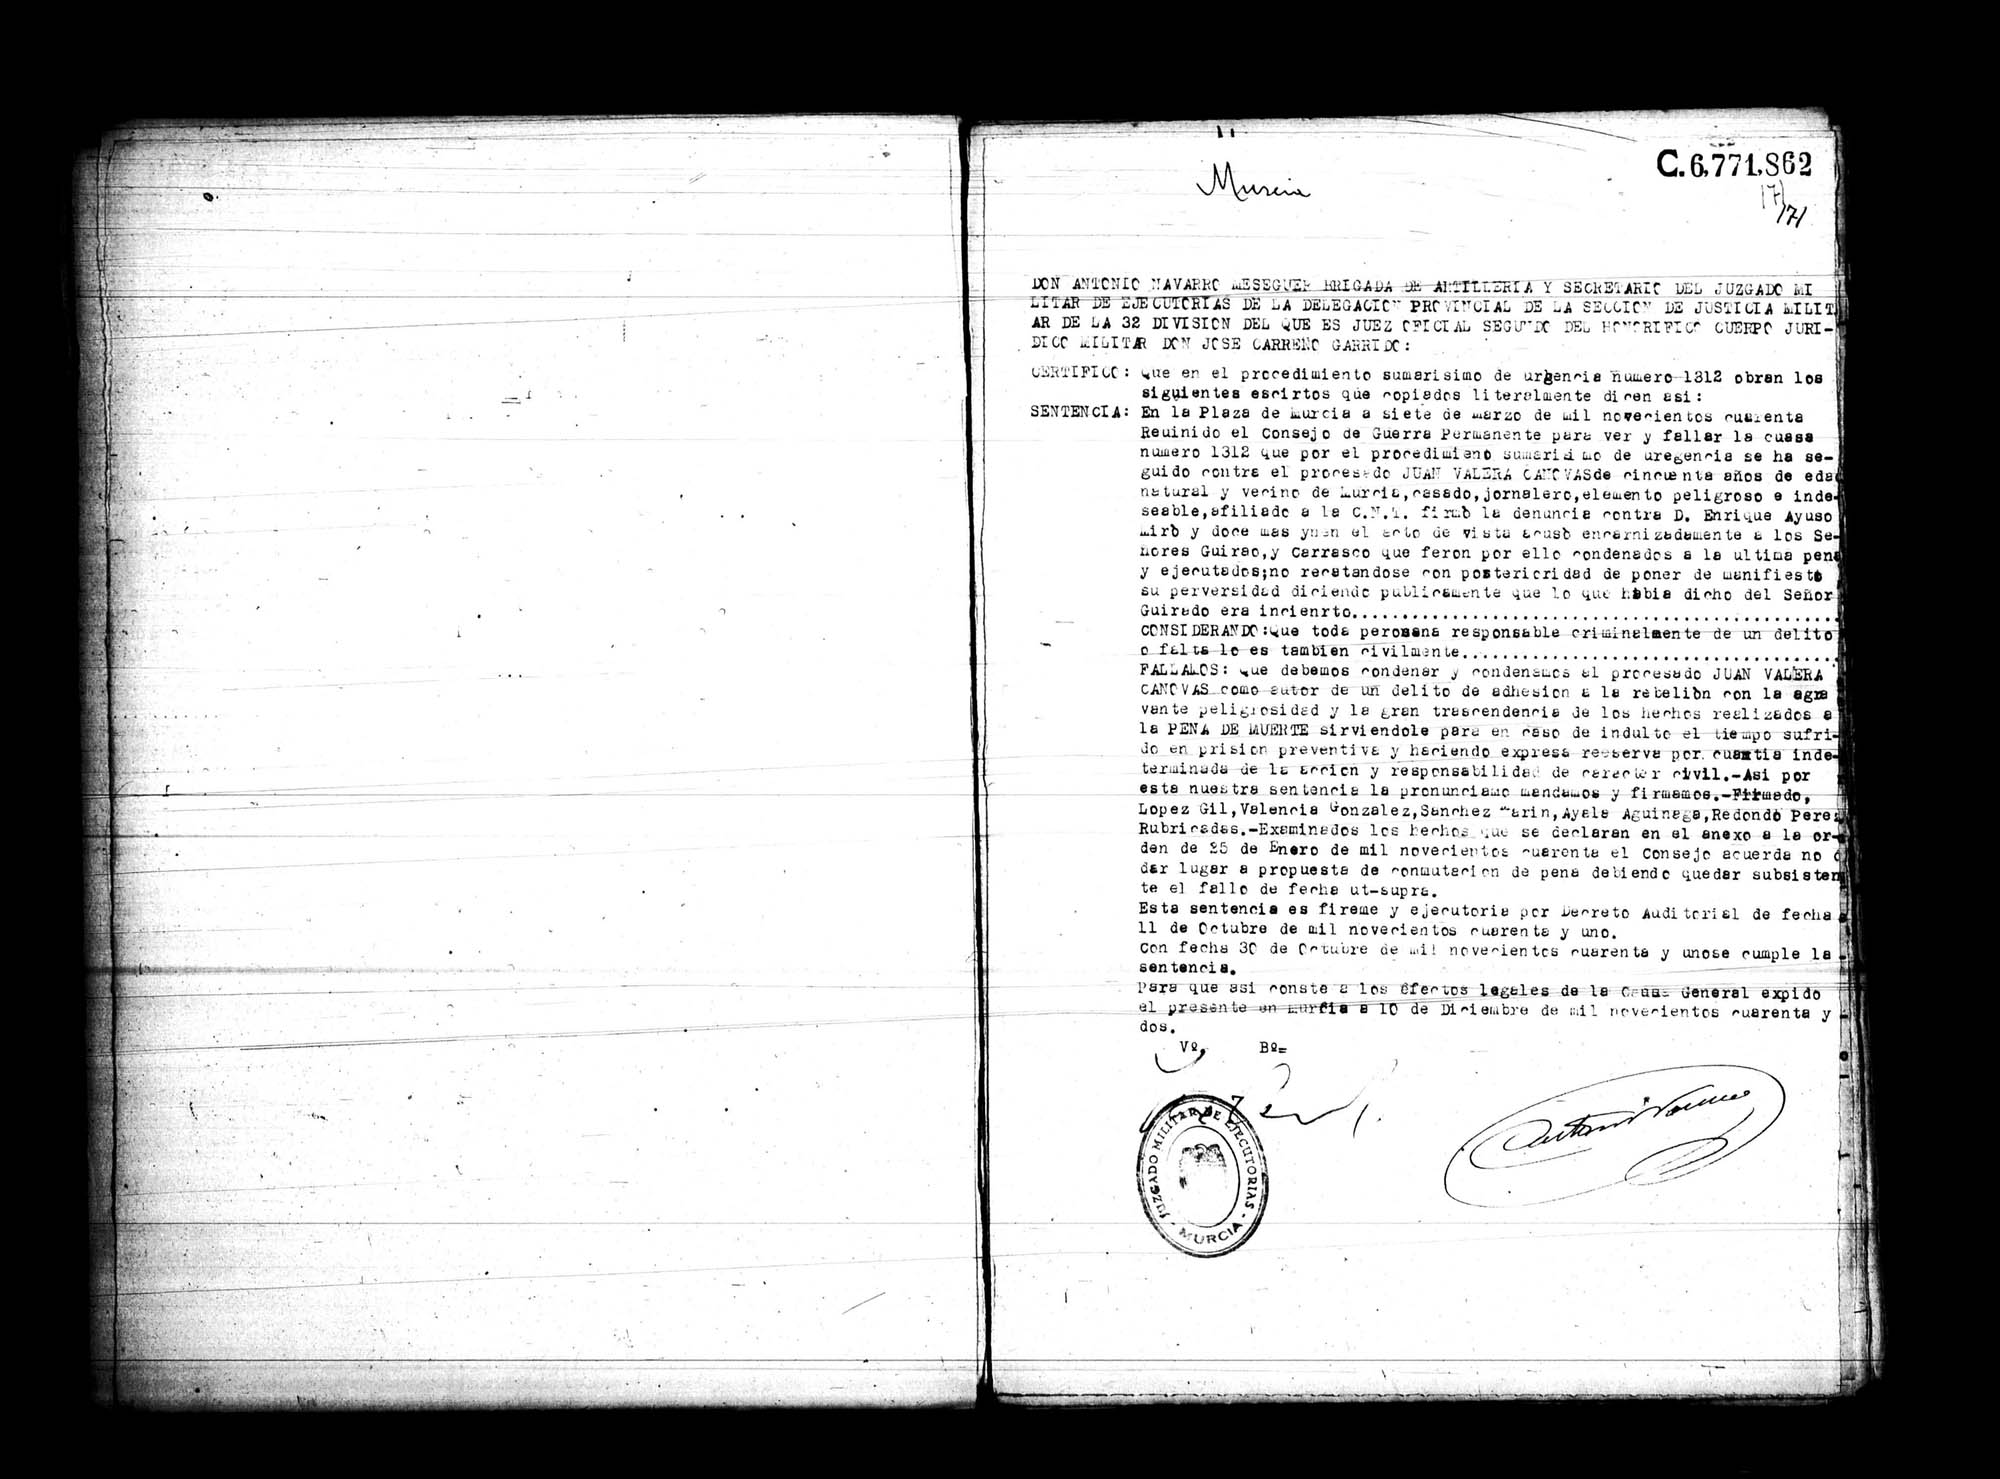 Certificado de la sentencia pronunciada contra Juan Valera Cánovas, causa 1312, el 7 de marzo de 1940 en Murcia.